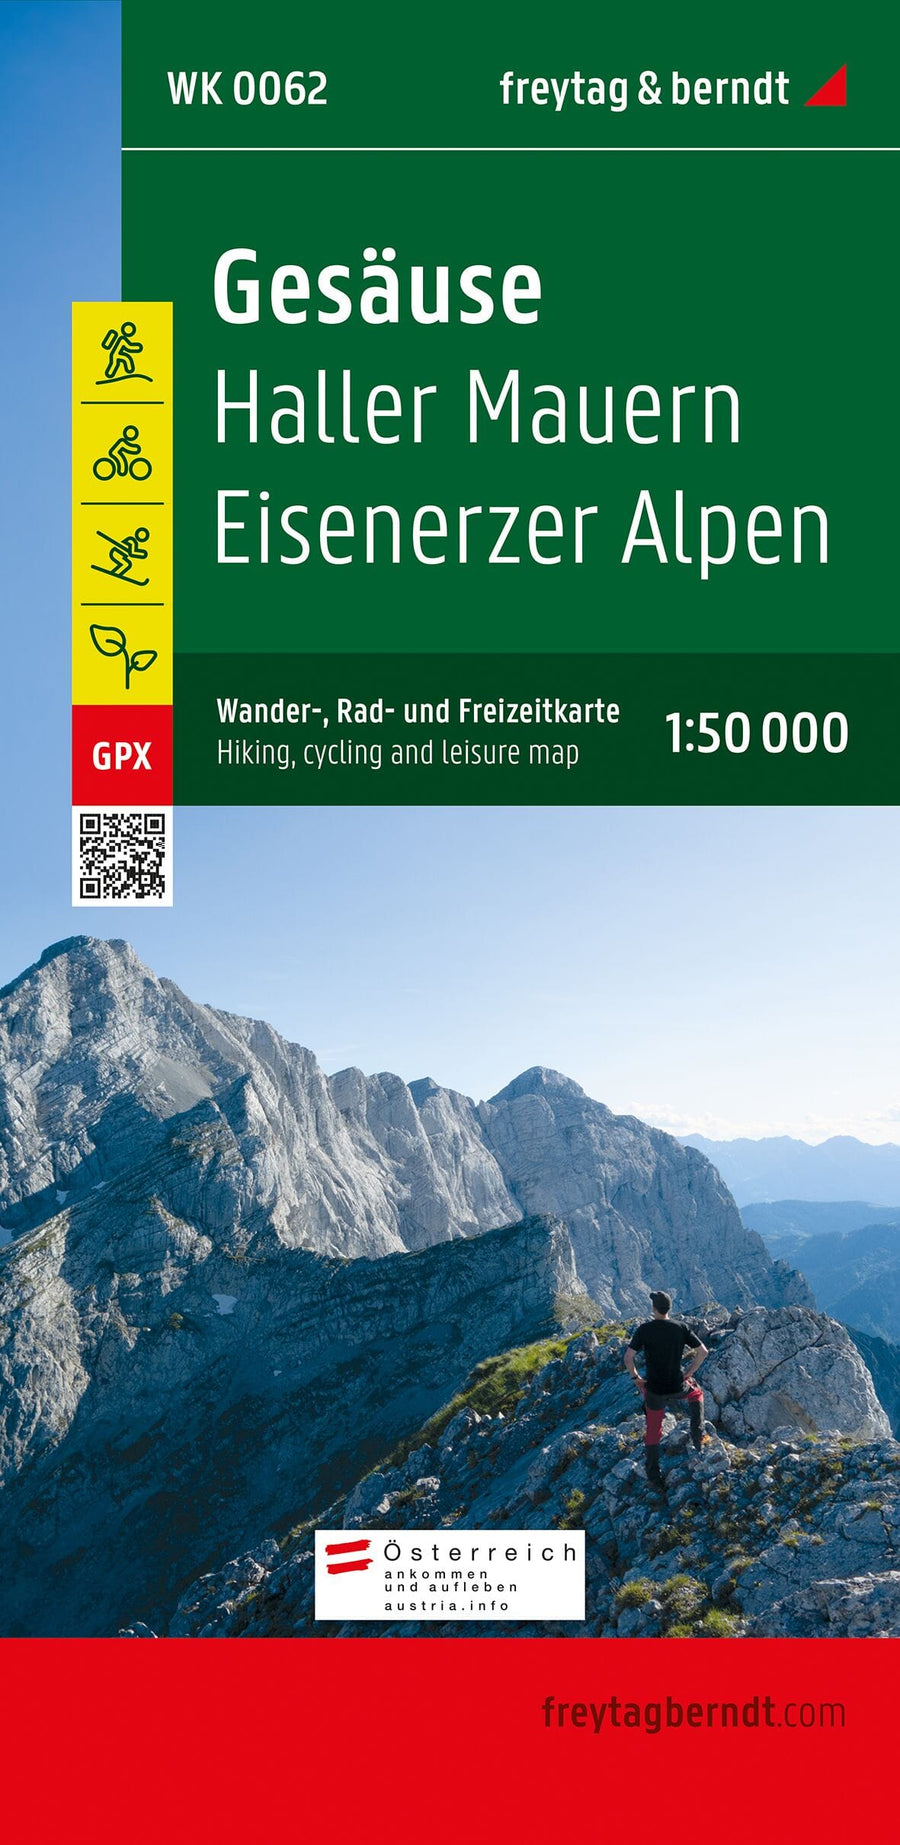 Carte de randonnée - Gesäuse, Haller Mauern, Eisenerzer Alpen (Alpes autrichiennes), n° WK062 | Freytag & Berndt carte pliée Freytag & Berndt 